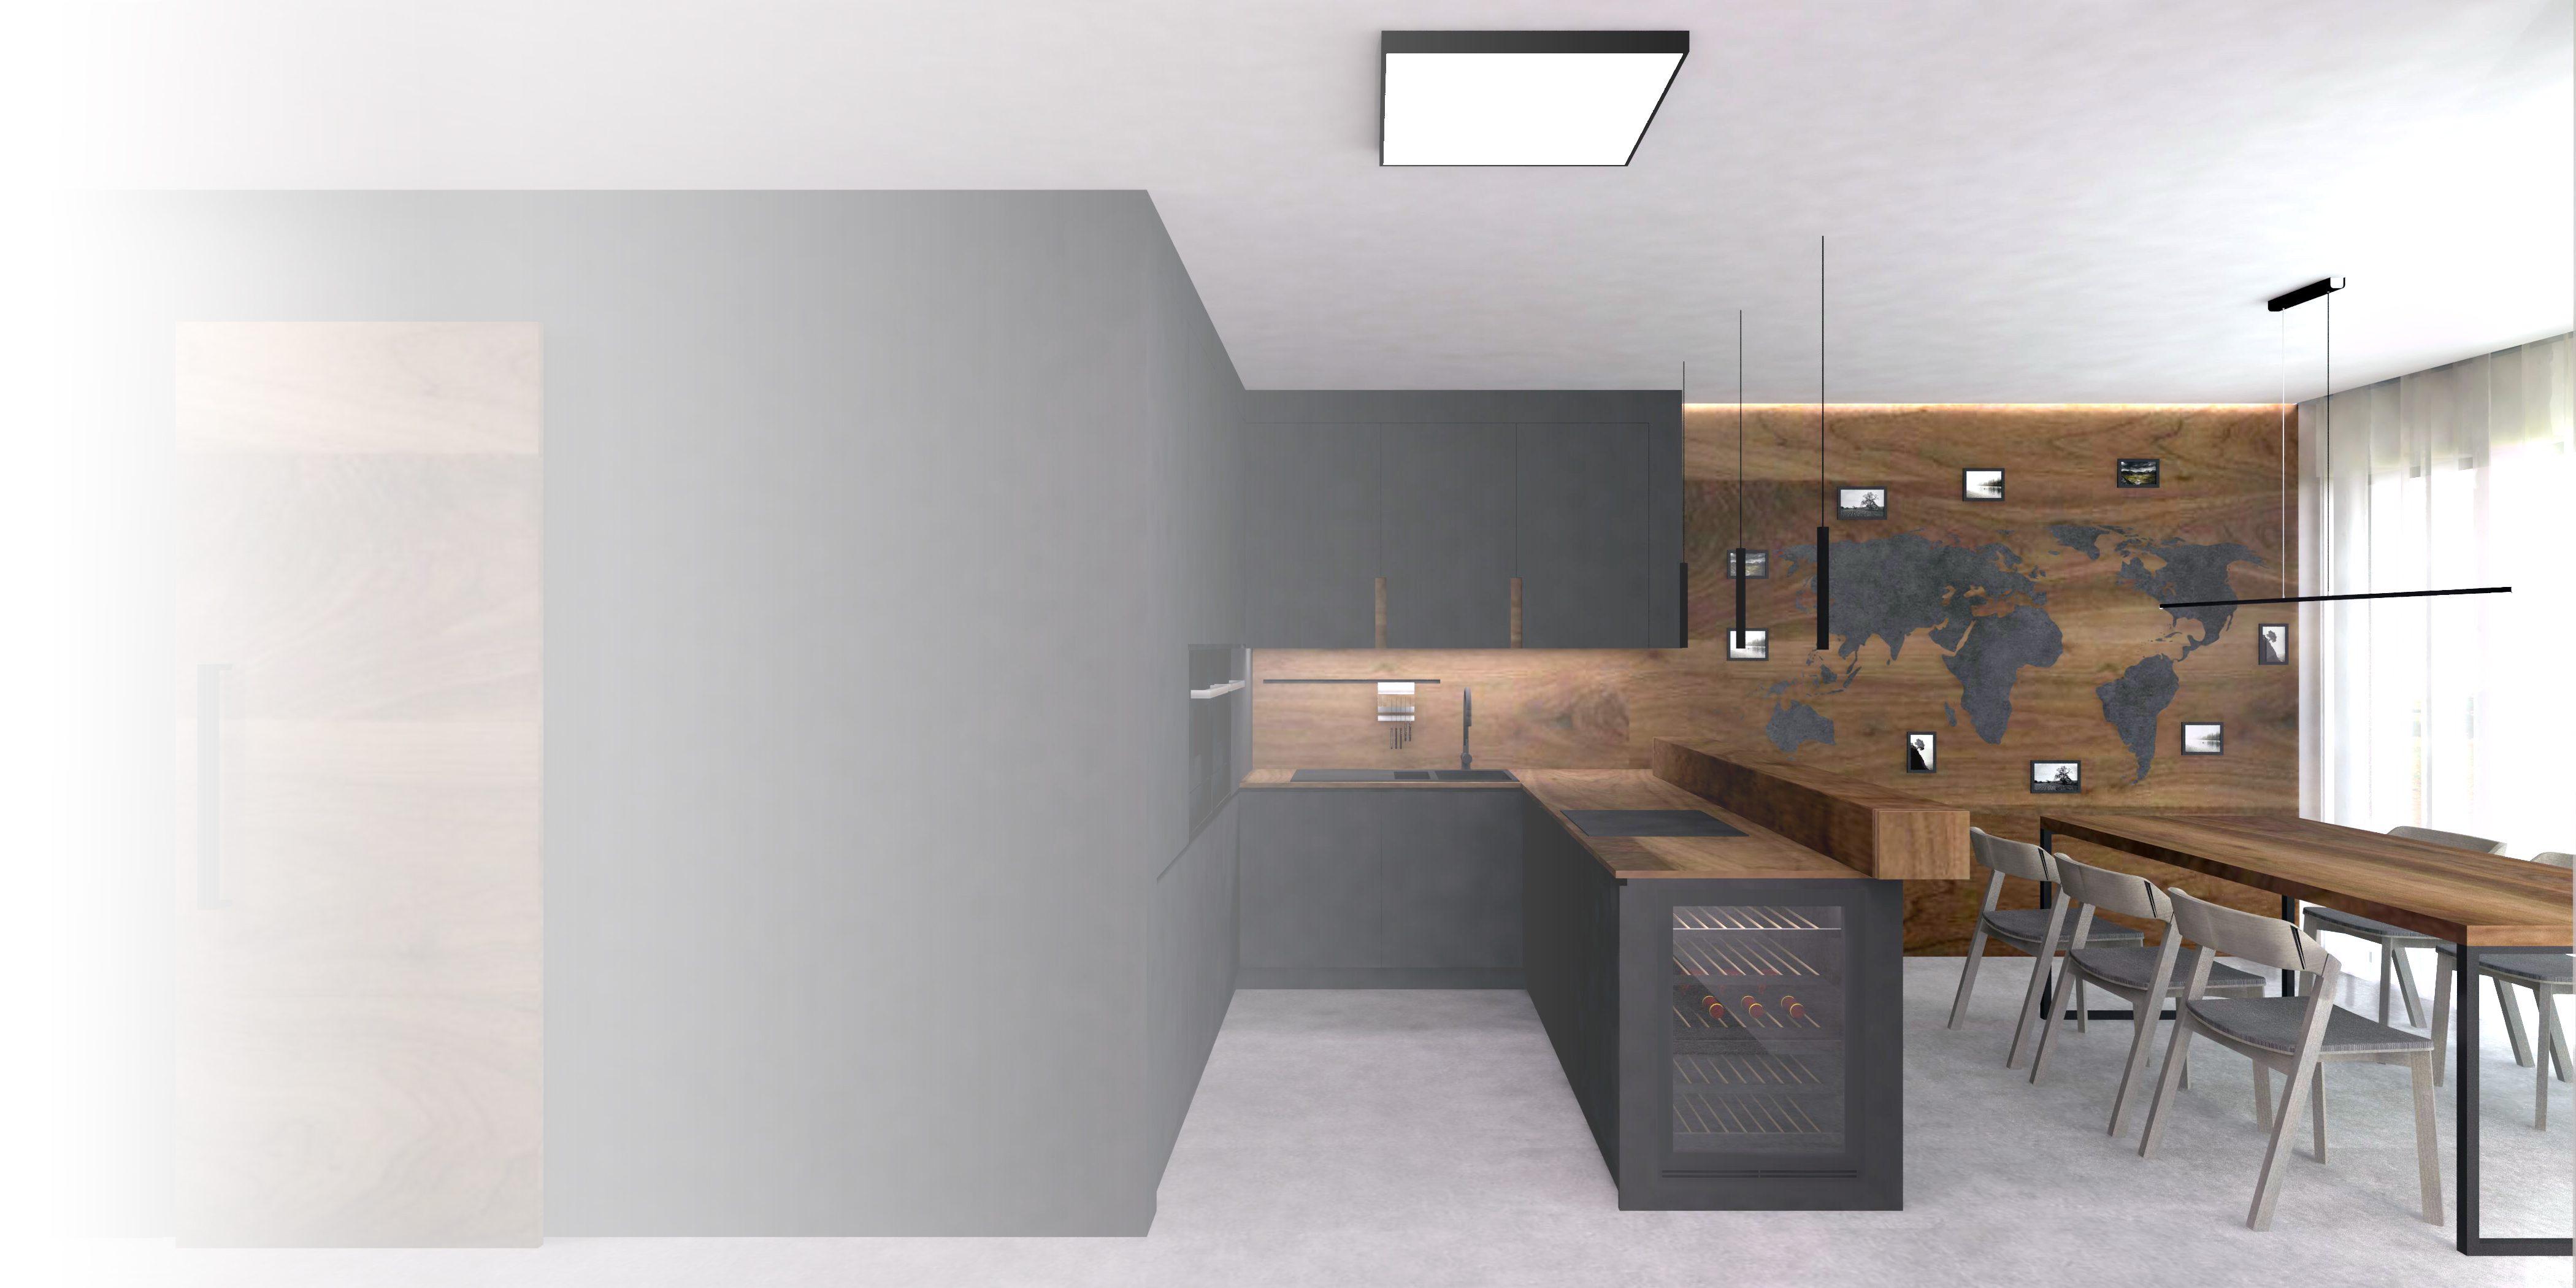 Antracitově šedá v kombinaci s ořechovým dřevem a podlahou z leštěného betonu v interiérovém designu kuchyňské a jídelní části hlavního obytného prostoru rodinného domu. 